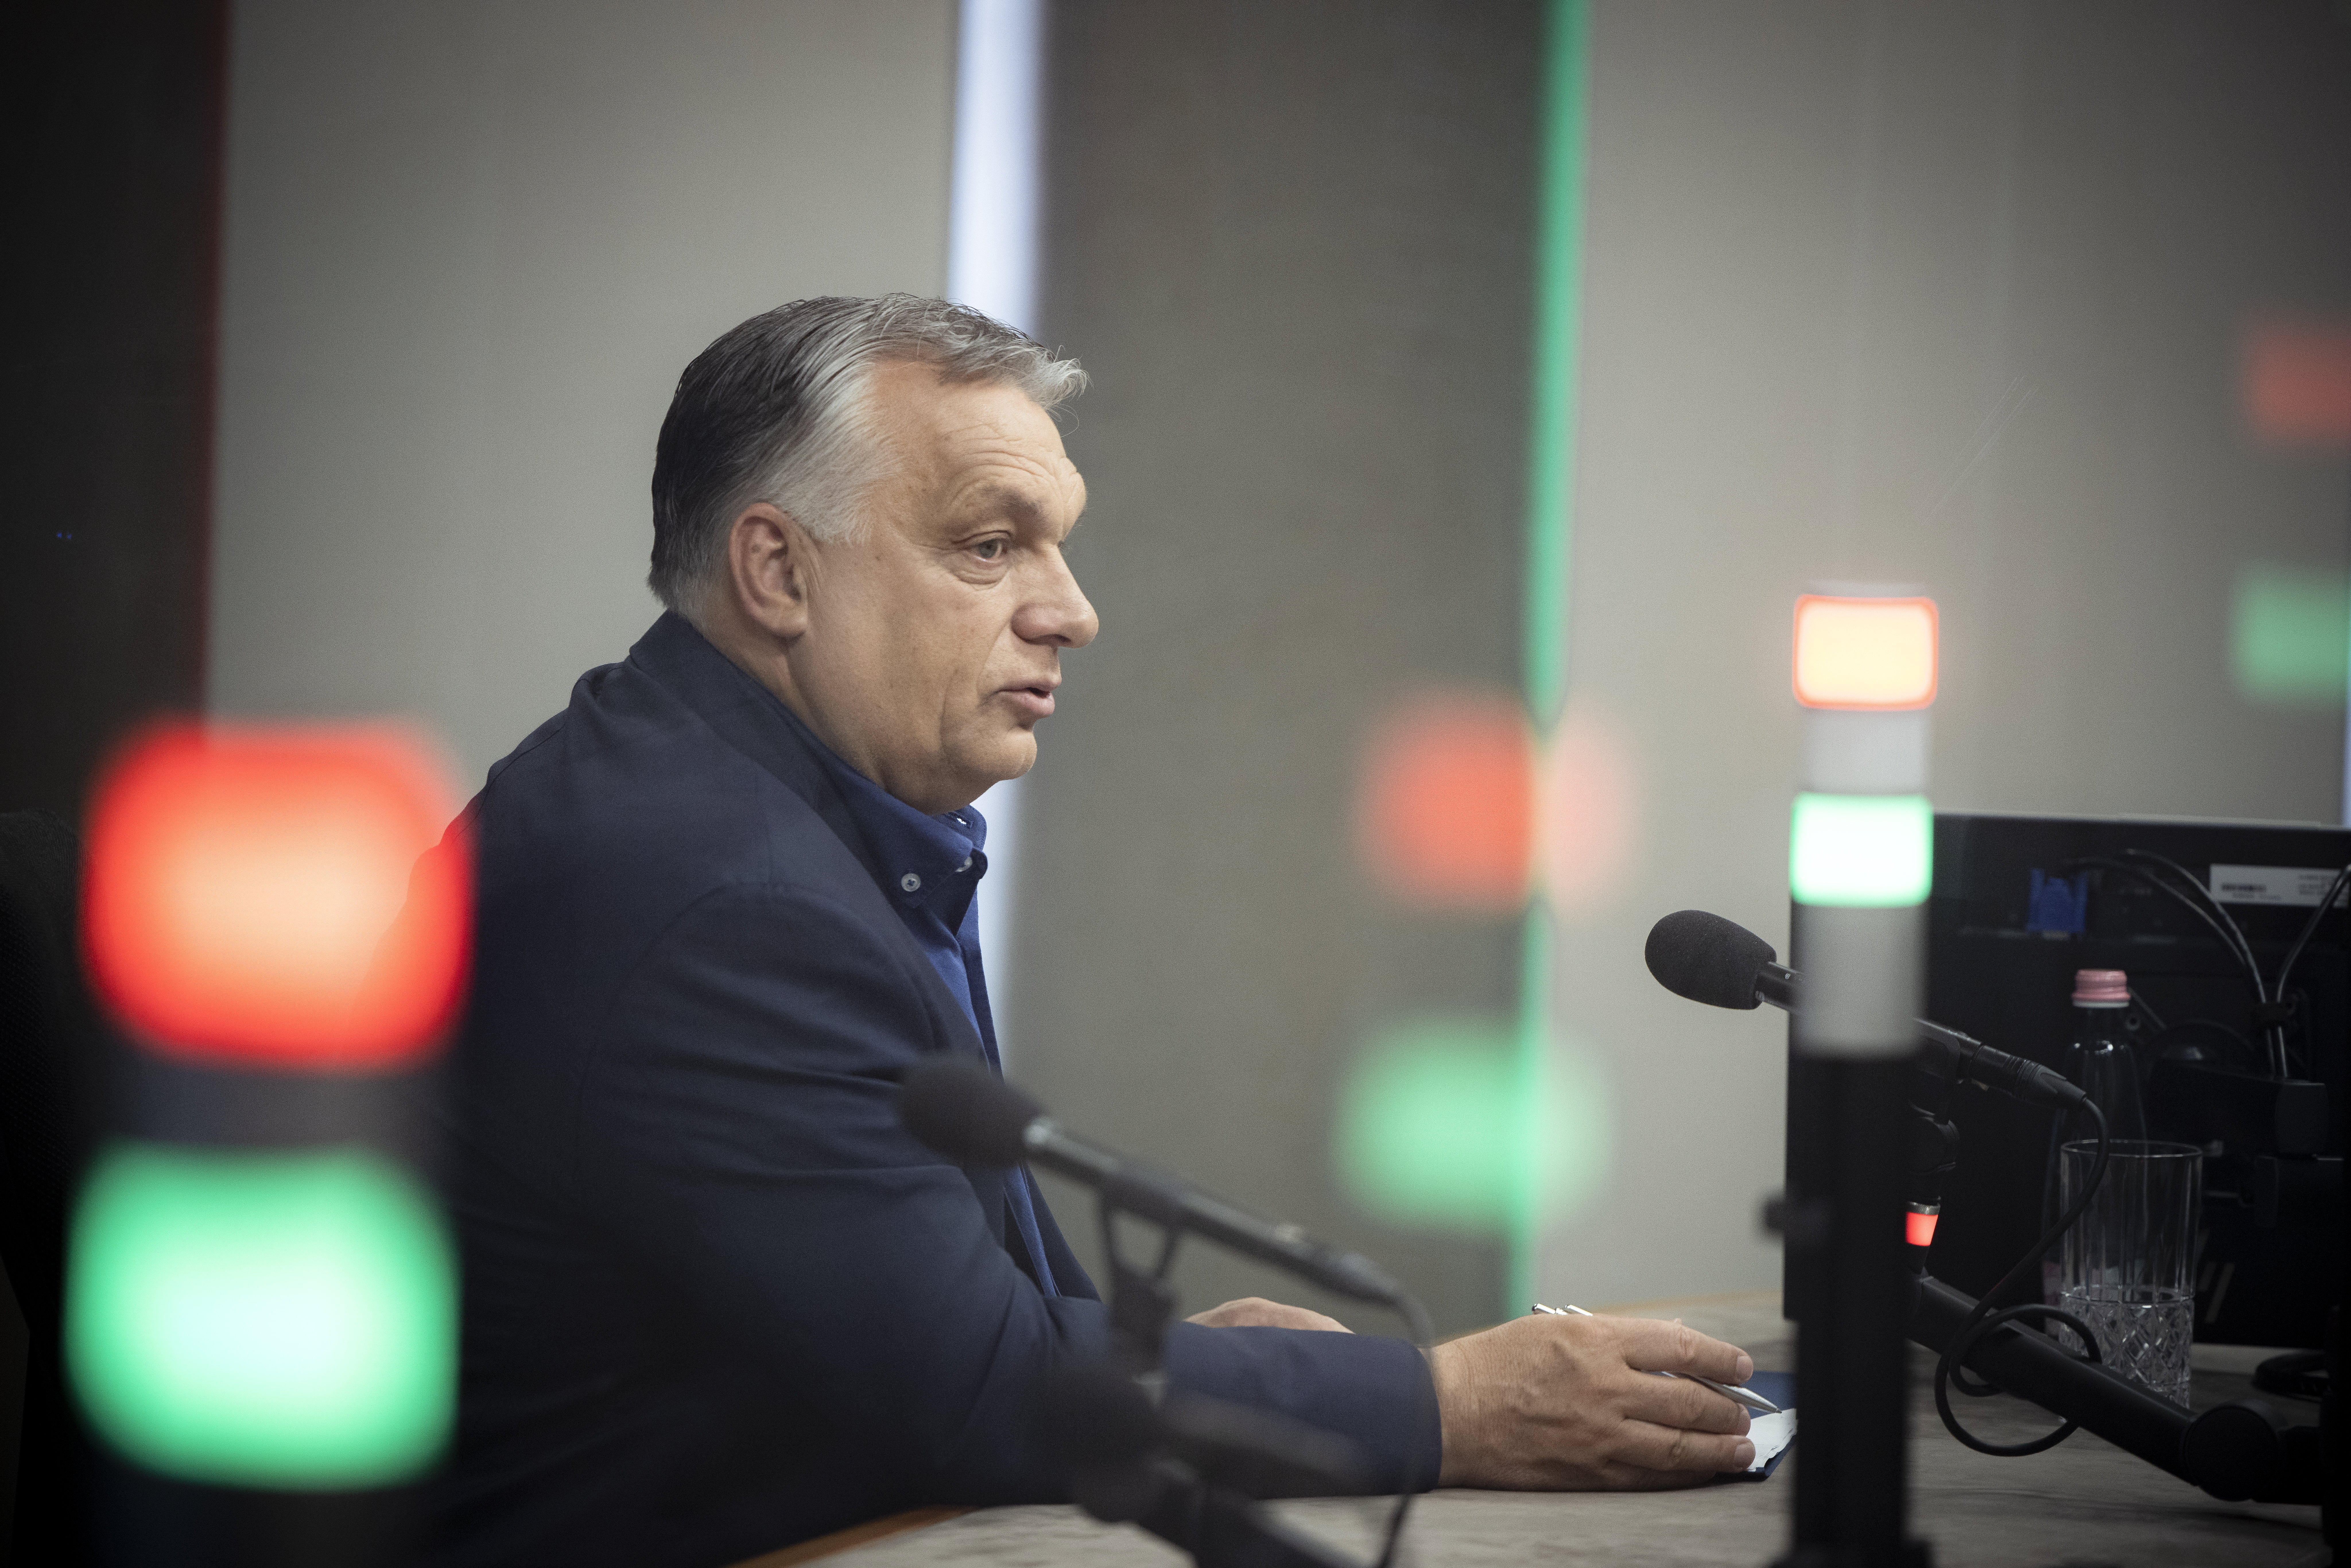 Az Orbán-kormány százmilliárdokból tartja fent a "rezsicsökkentés" látszatát